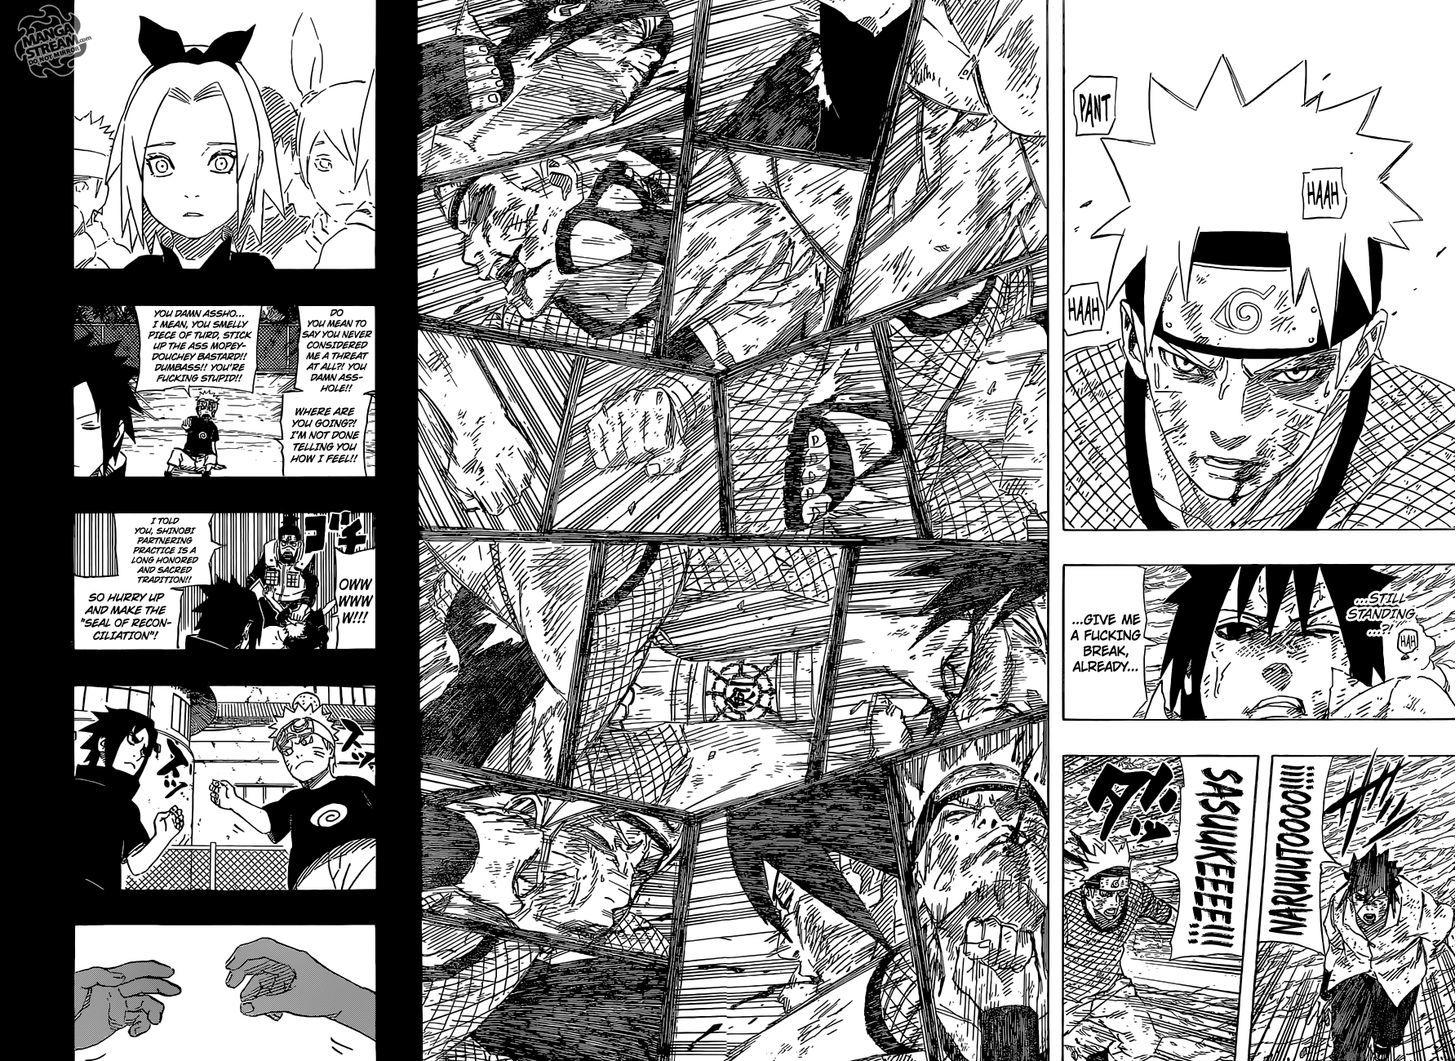 Vol.72 Chapter 697 – Naruto and Sasuke 4 | 13 page